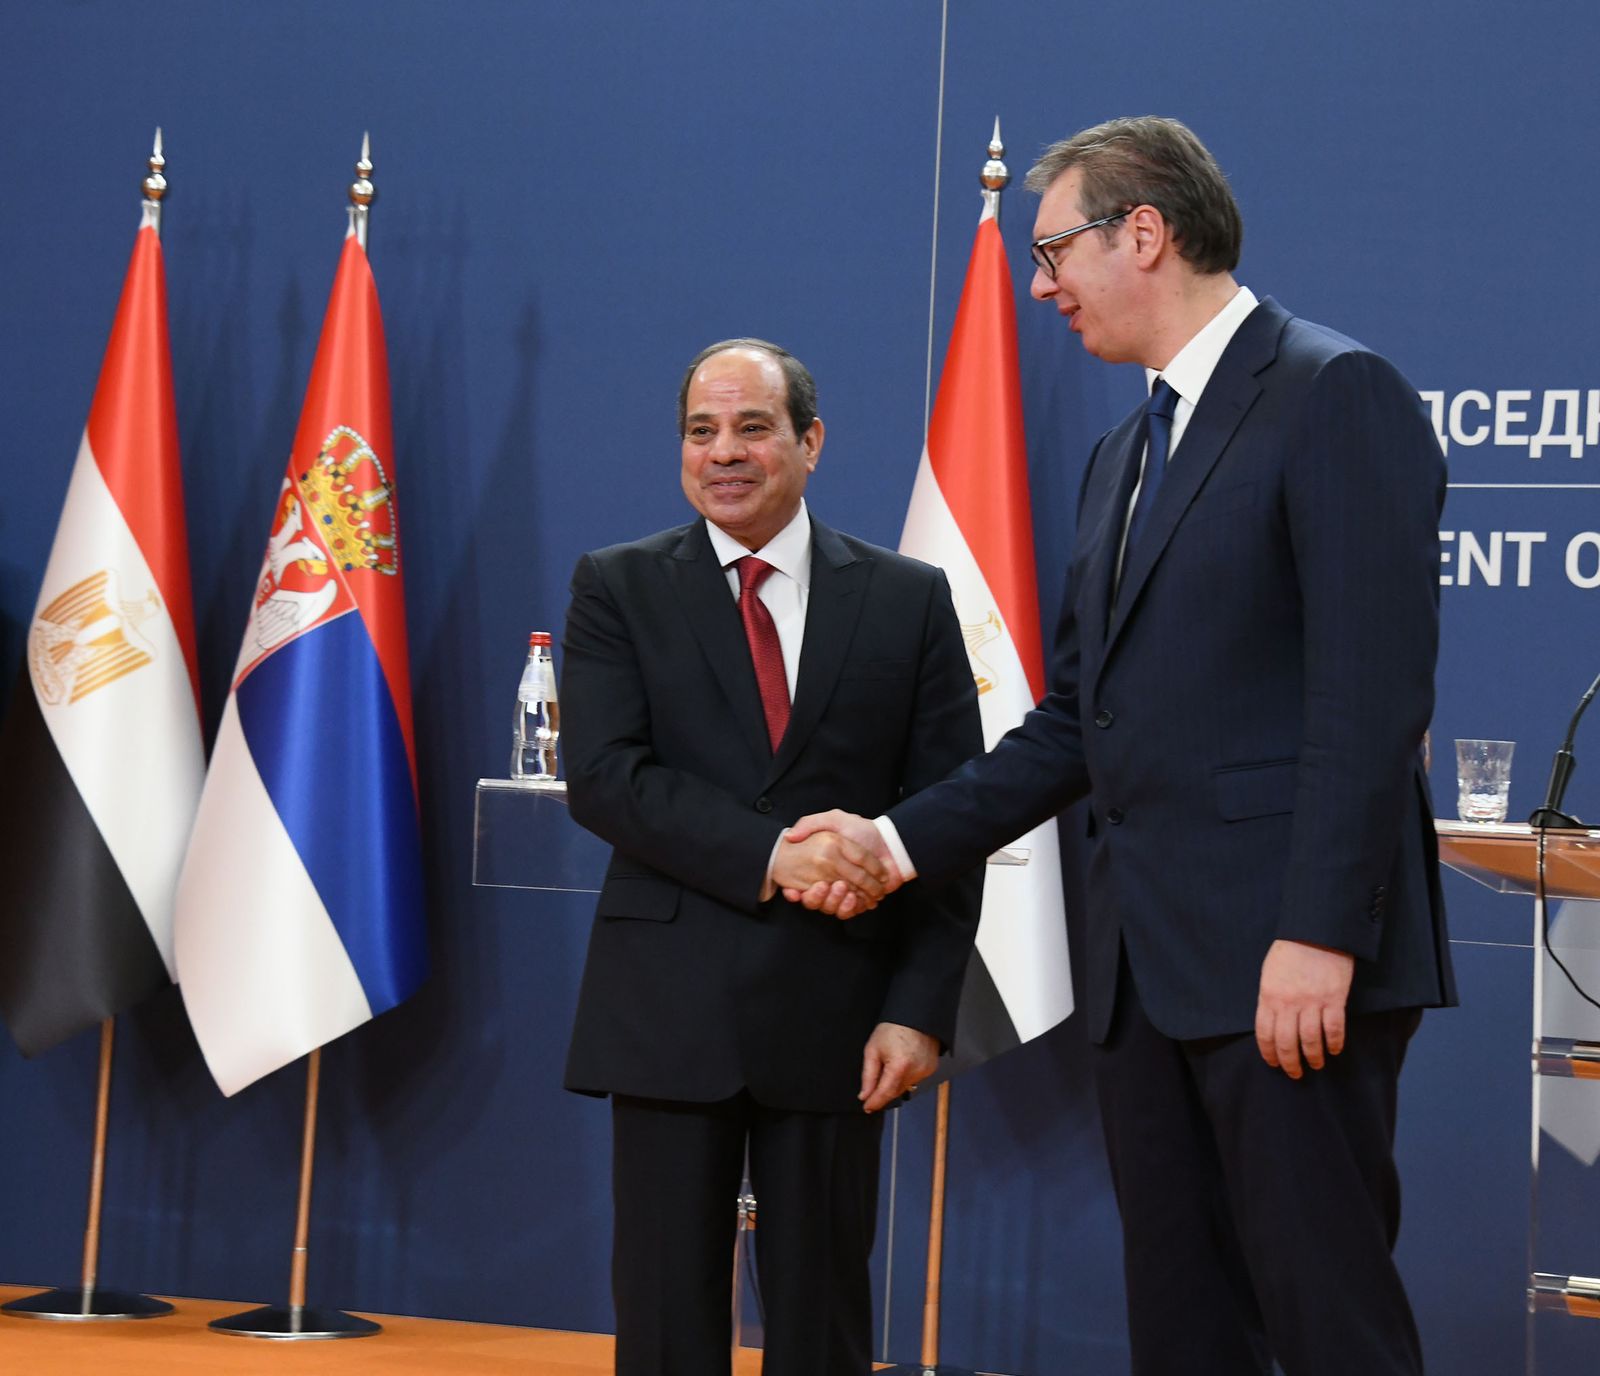 فعاليات زيارة الرئيس السيسي إلى صربيا